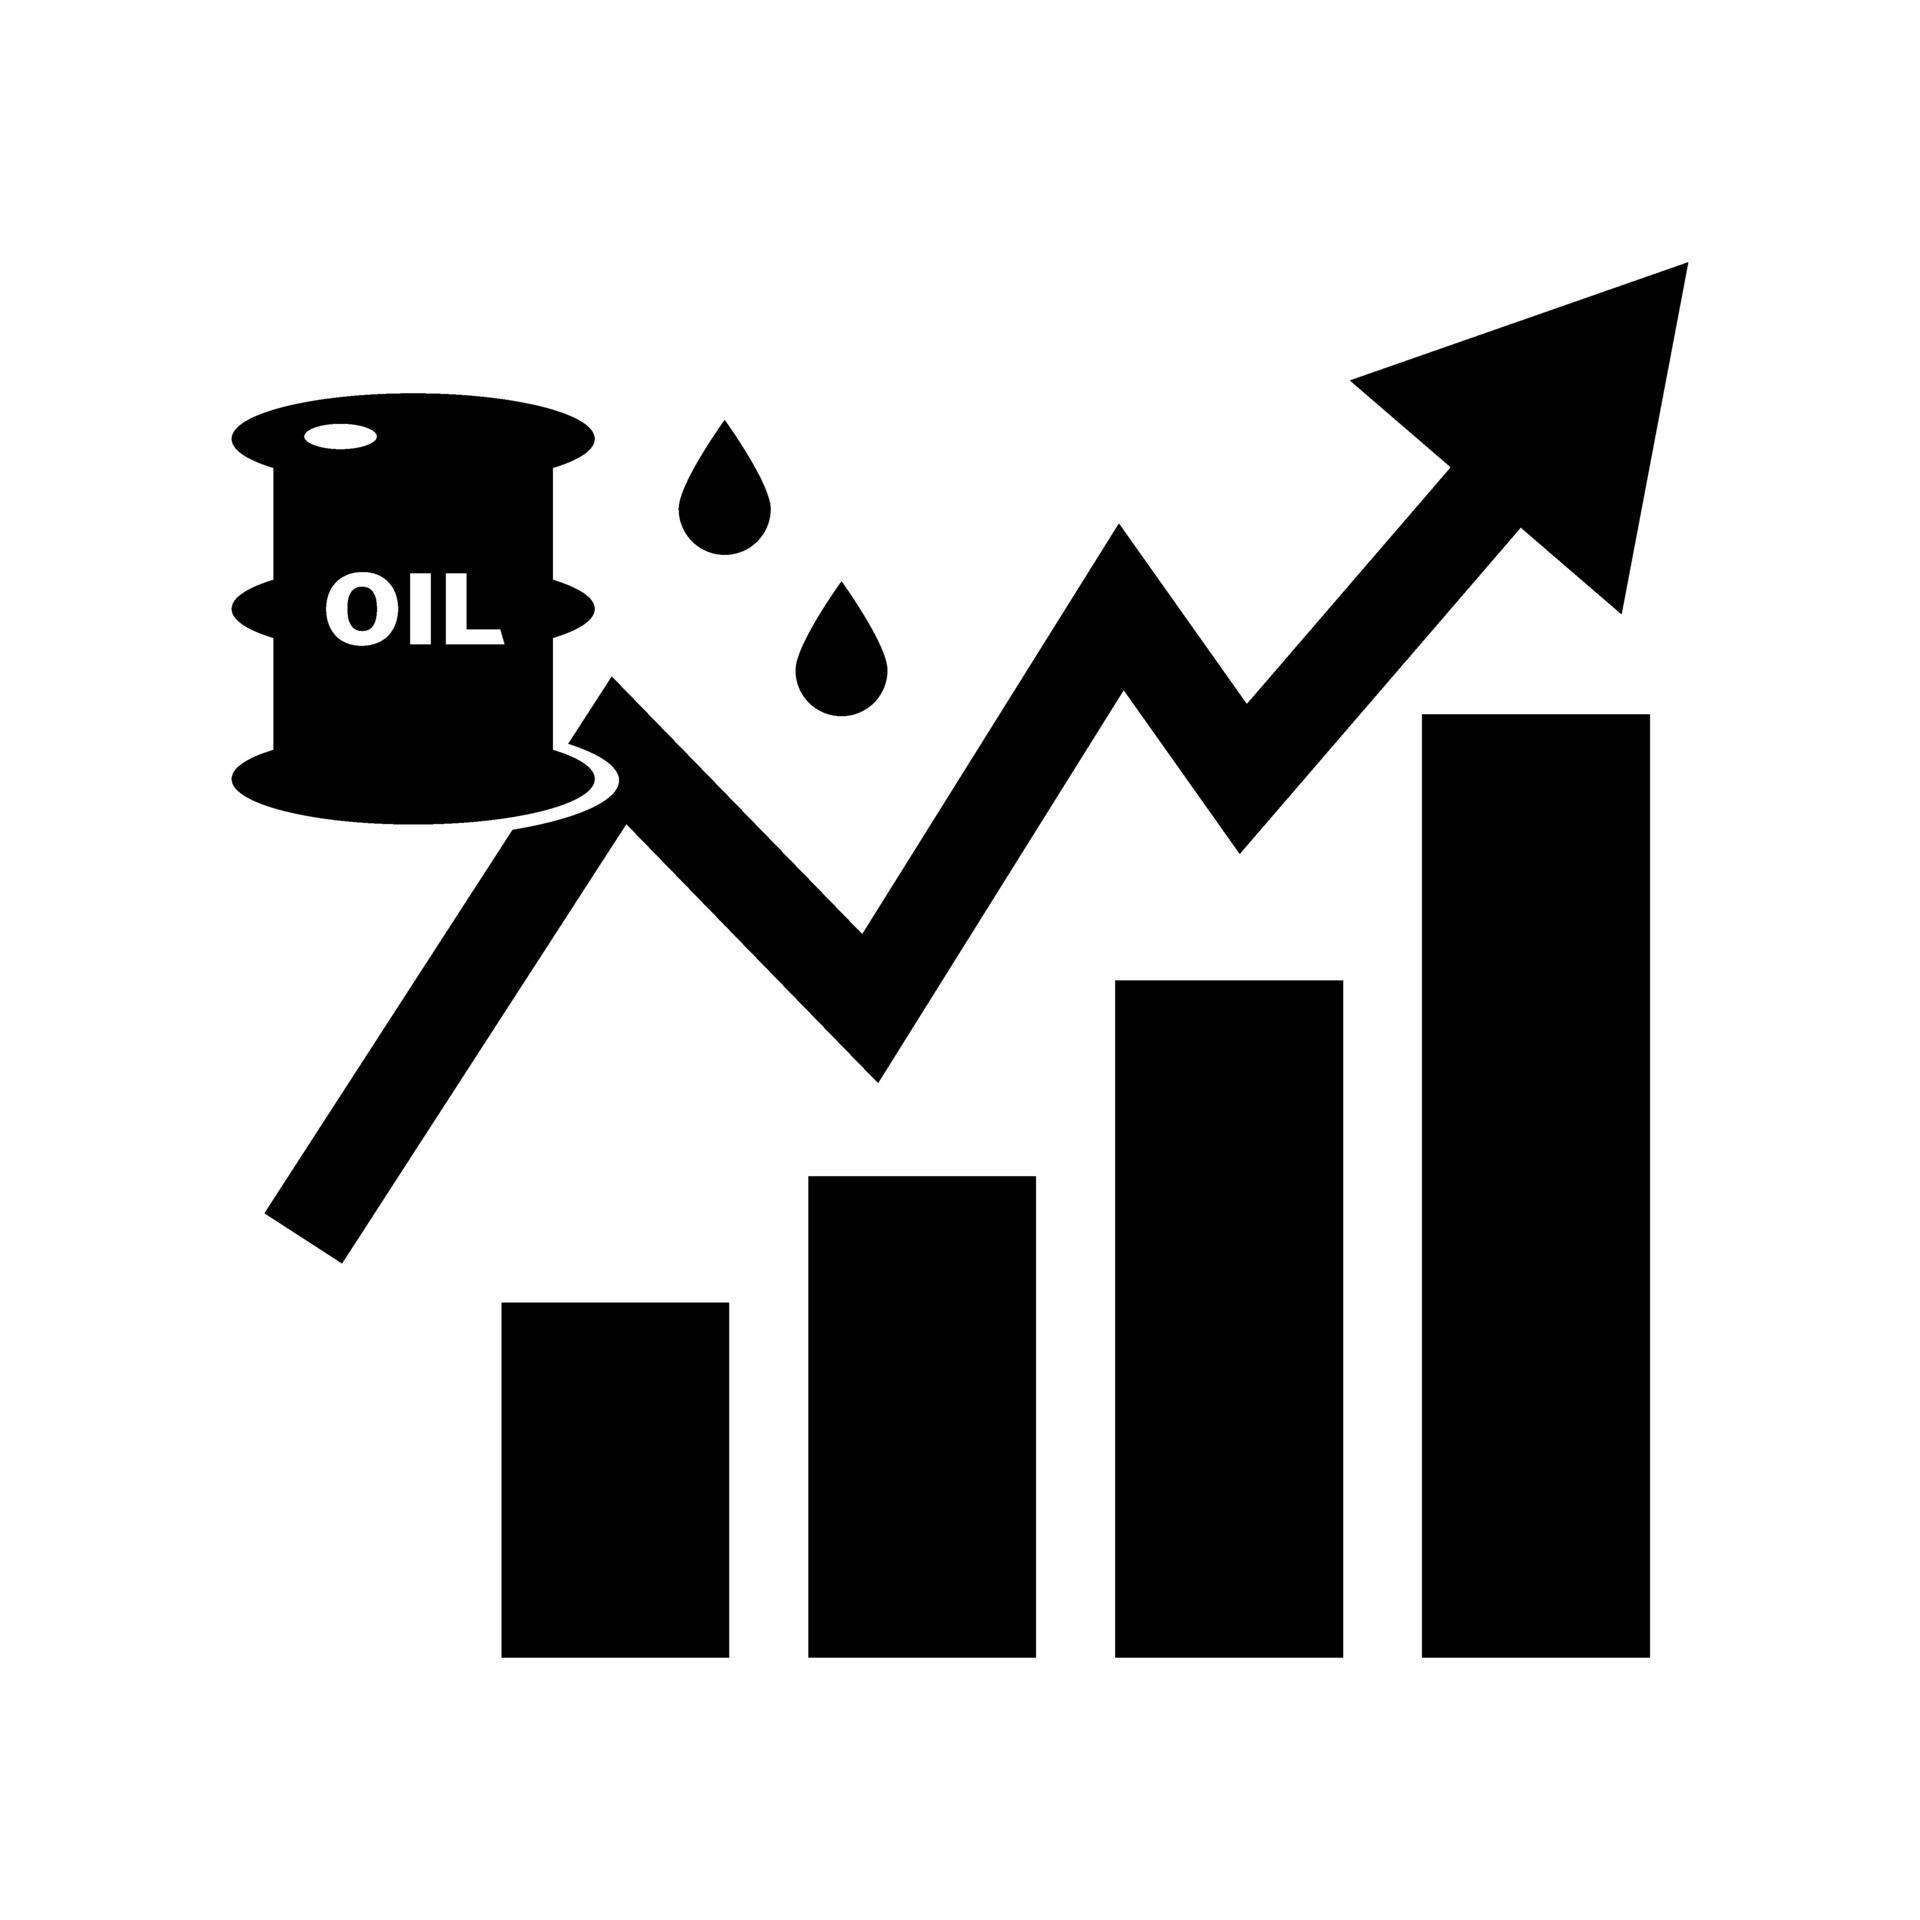 Preis erhöhen, ansteigen Bar Graph Silhouette Symbol von roh Öl oder  Petroleum Preis. Vektor. 27739351 Vektor Kunst bei Vecteezy